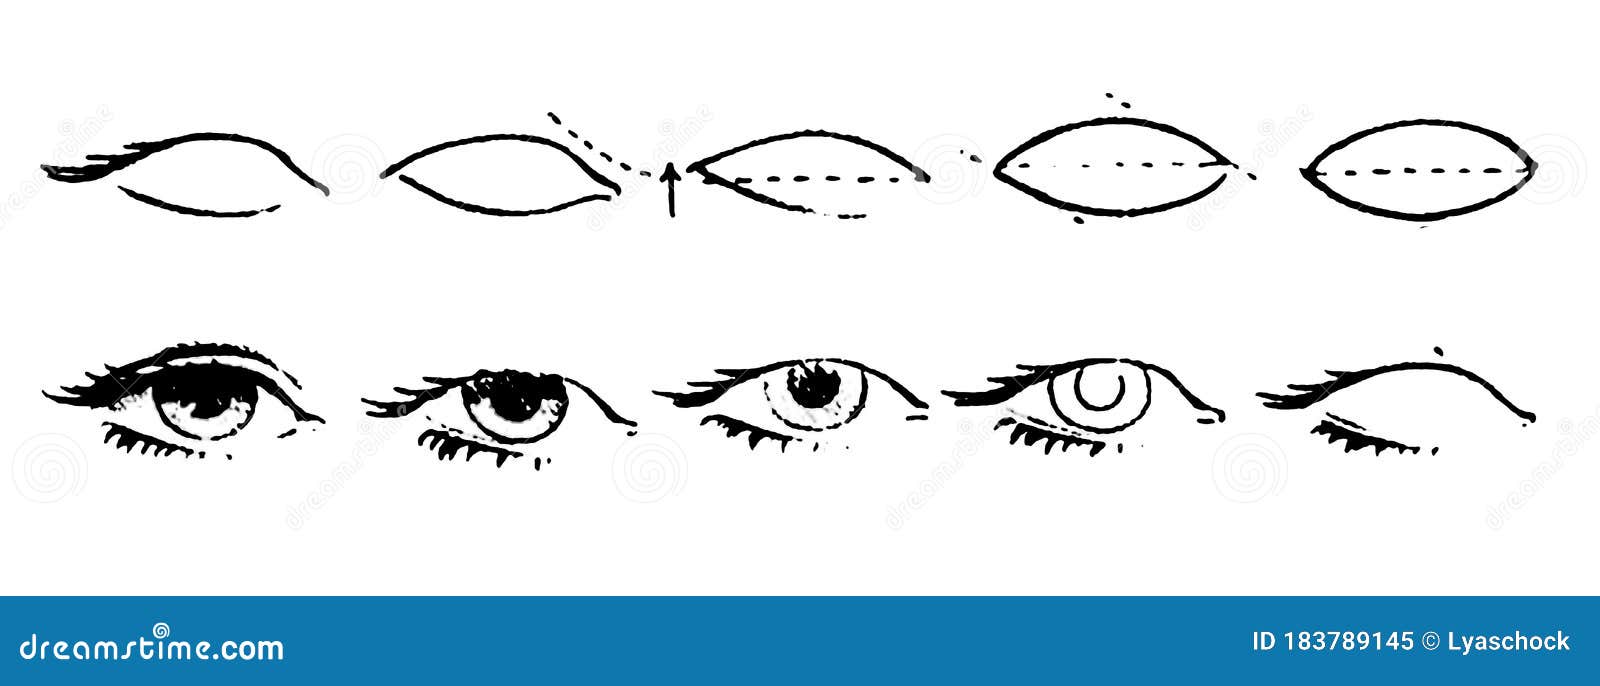 Глаз чертеж. Схема глаза рисунок. Нарисовать глаз поэтапно. Схема как нарисовать глаз. Как научиться рисовать глаза карандашом схема.